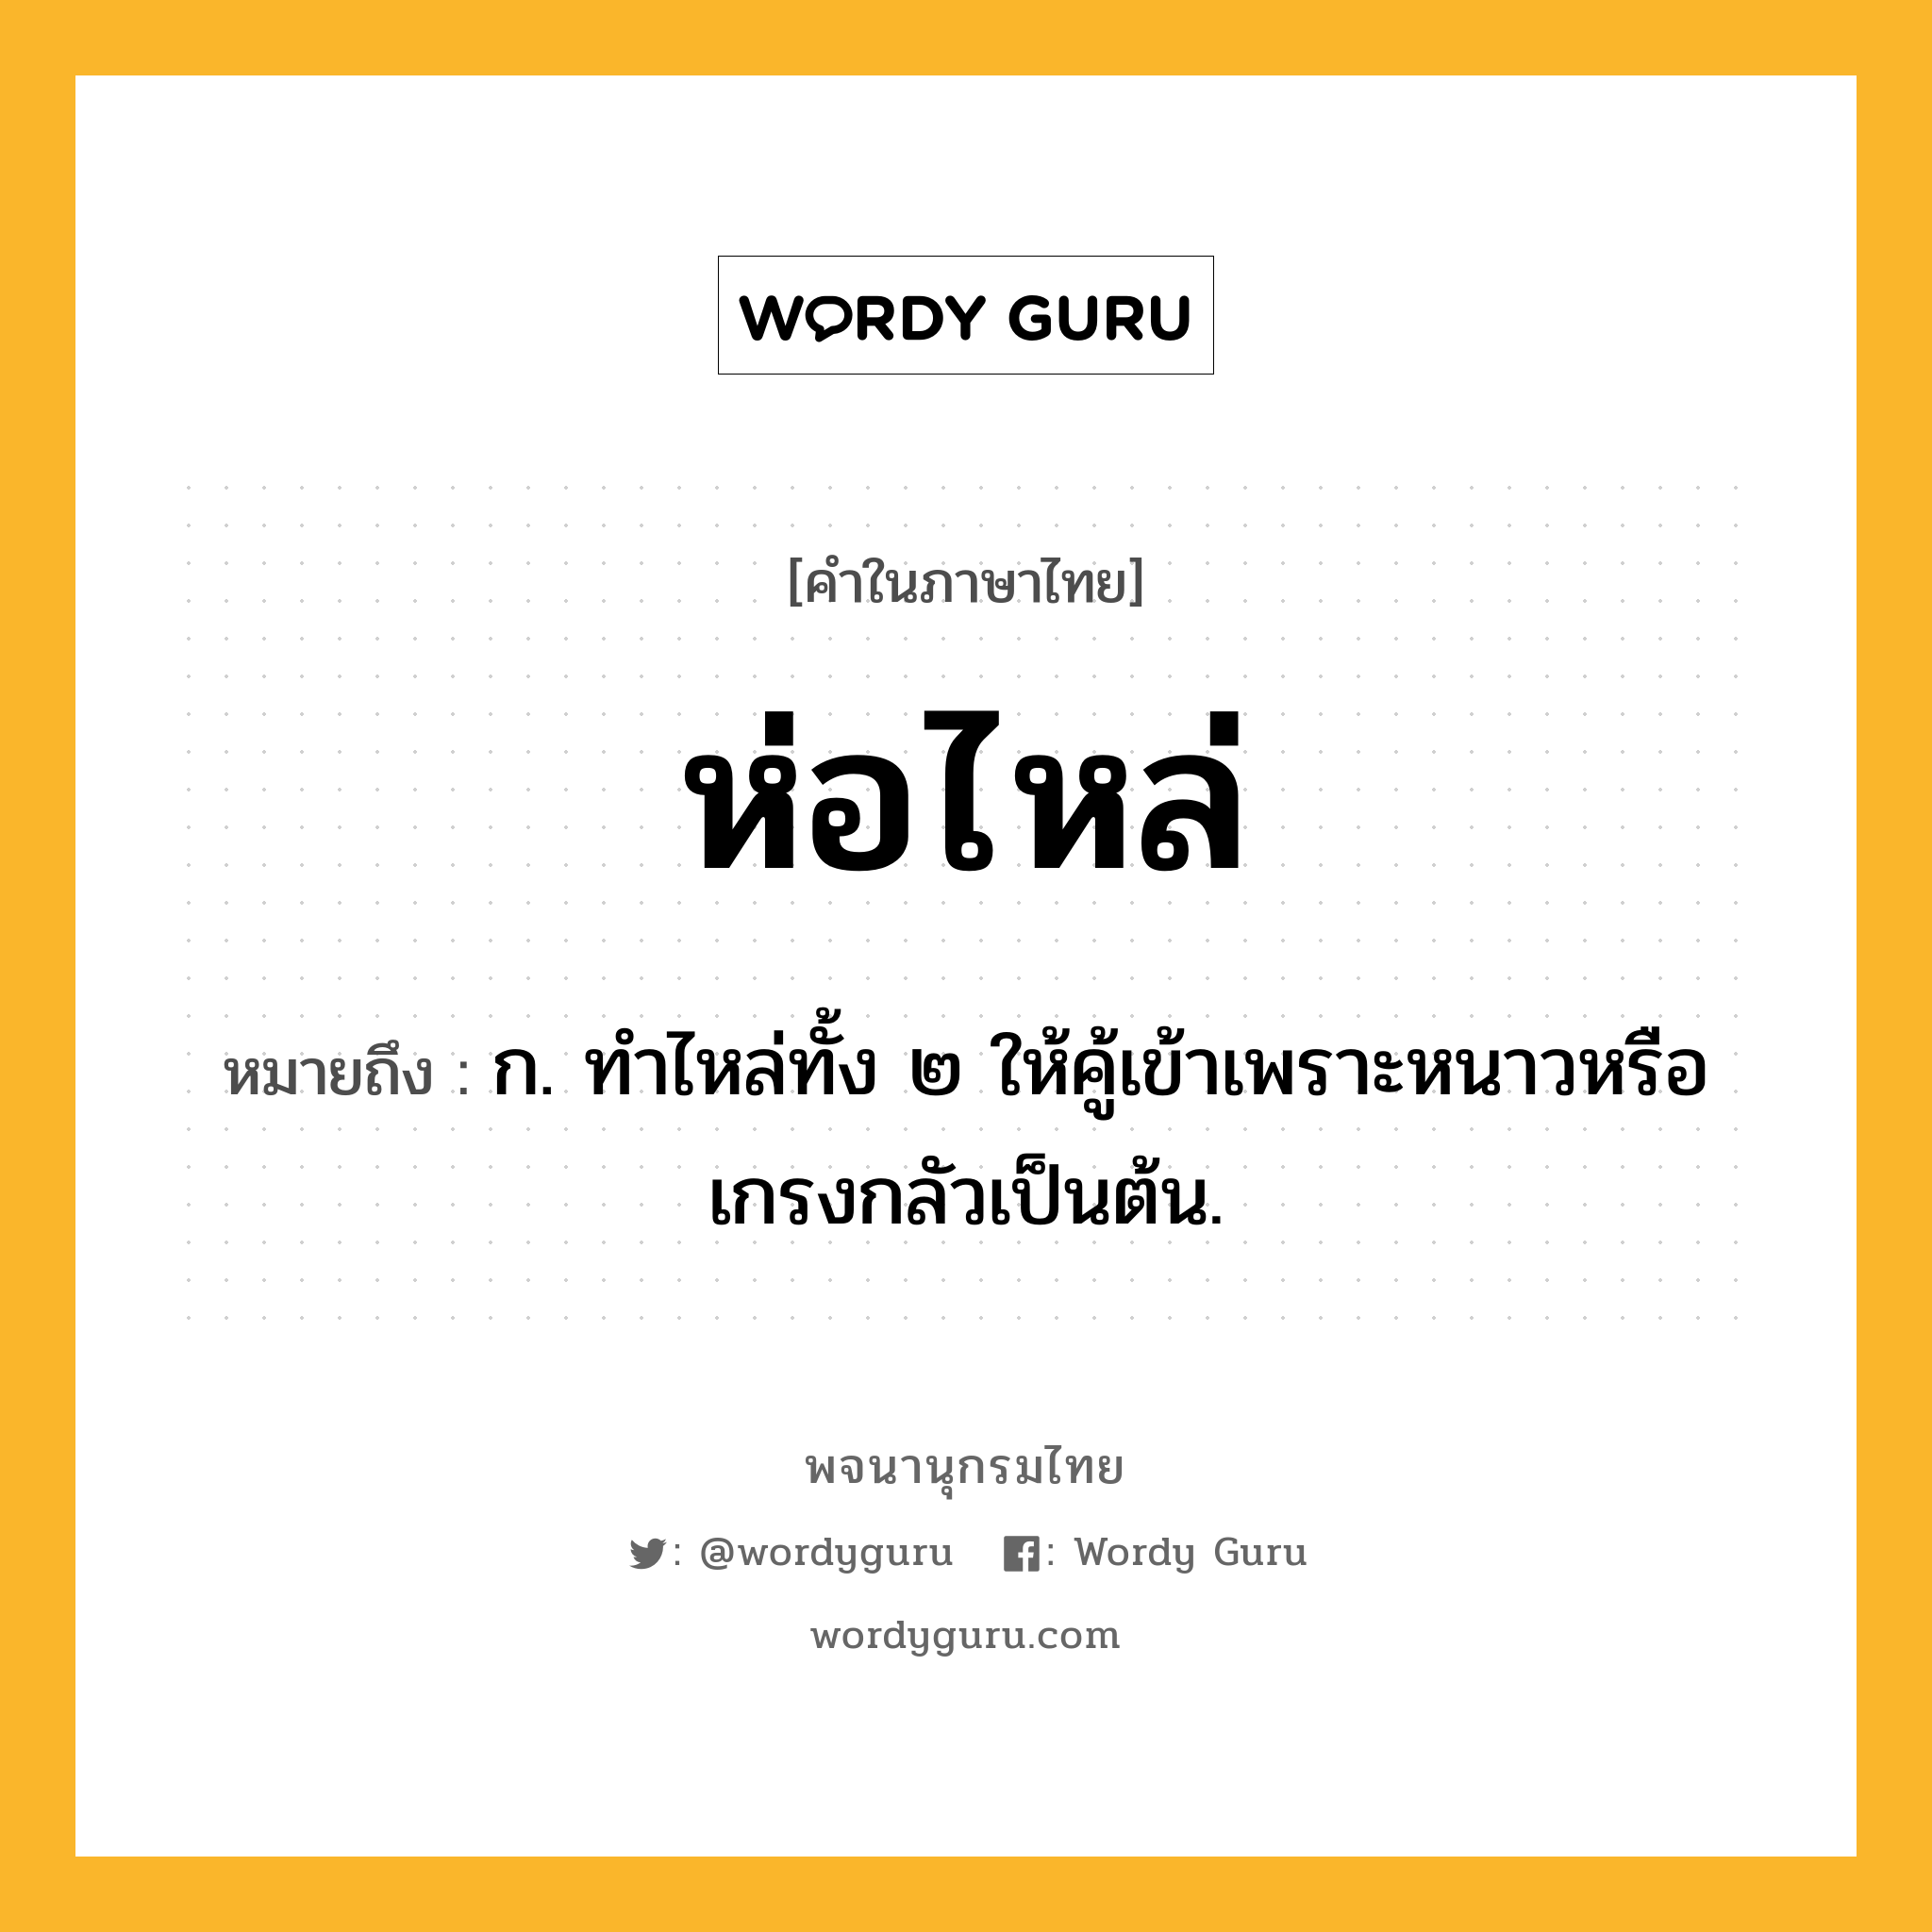 ห่อไหล่ หมายถึงอะไร?, คำในภาษาไทย ห่อไหล่ หมายถึง ก. ทำไหล่ทั้ง ๒ ให้คู้เข้าเพราะหนาวหรือเกรงกลัวเป็นต้น.